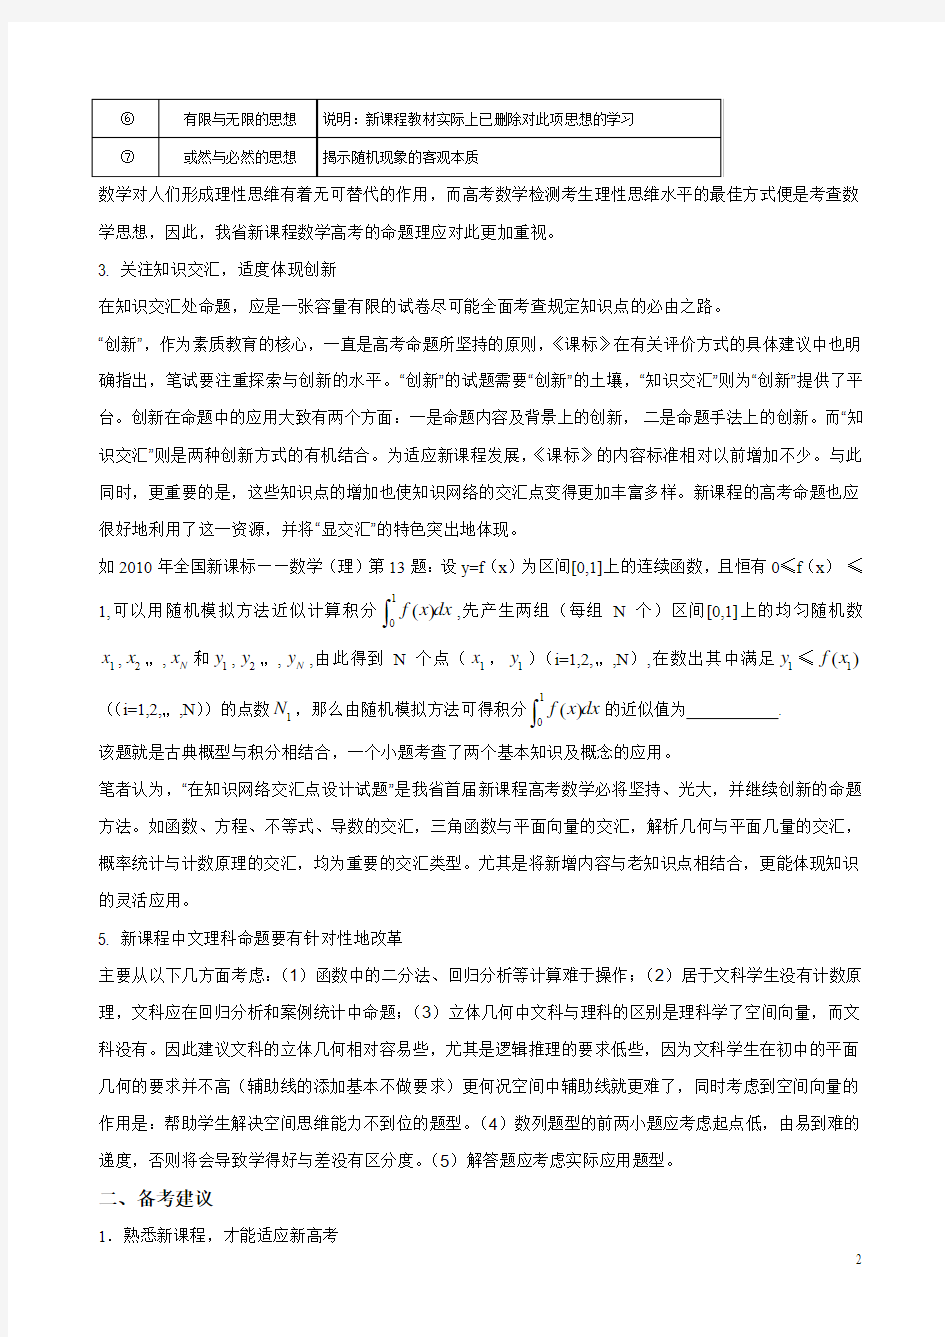 2011年江西省高考数学的命题及备考建议